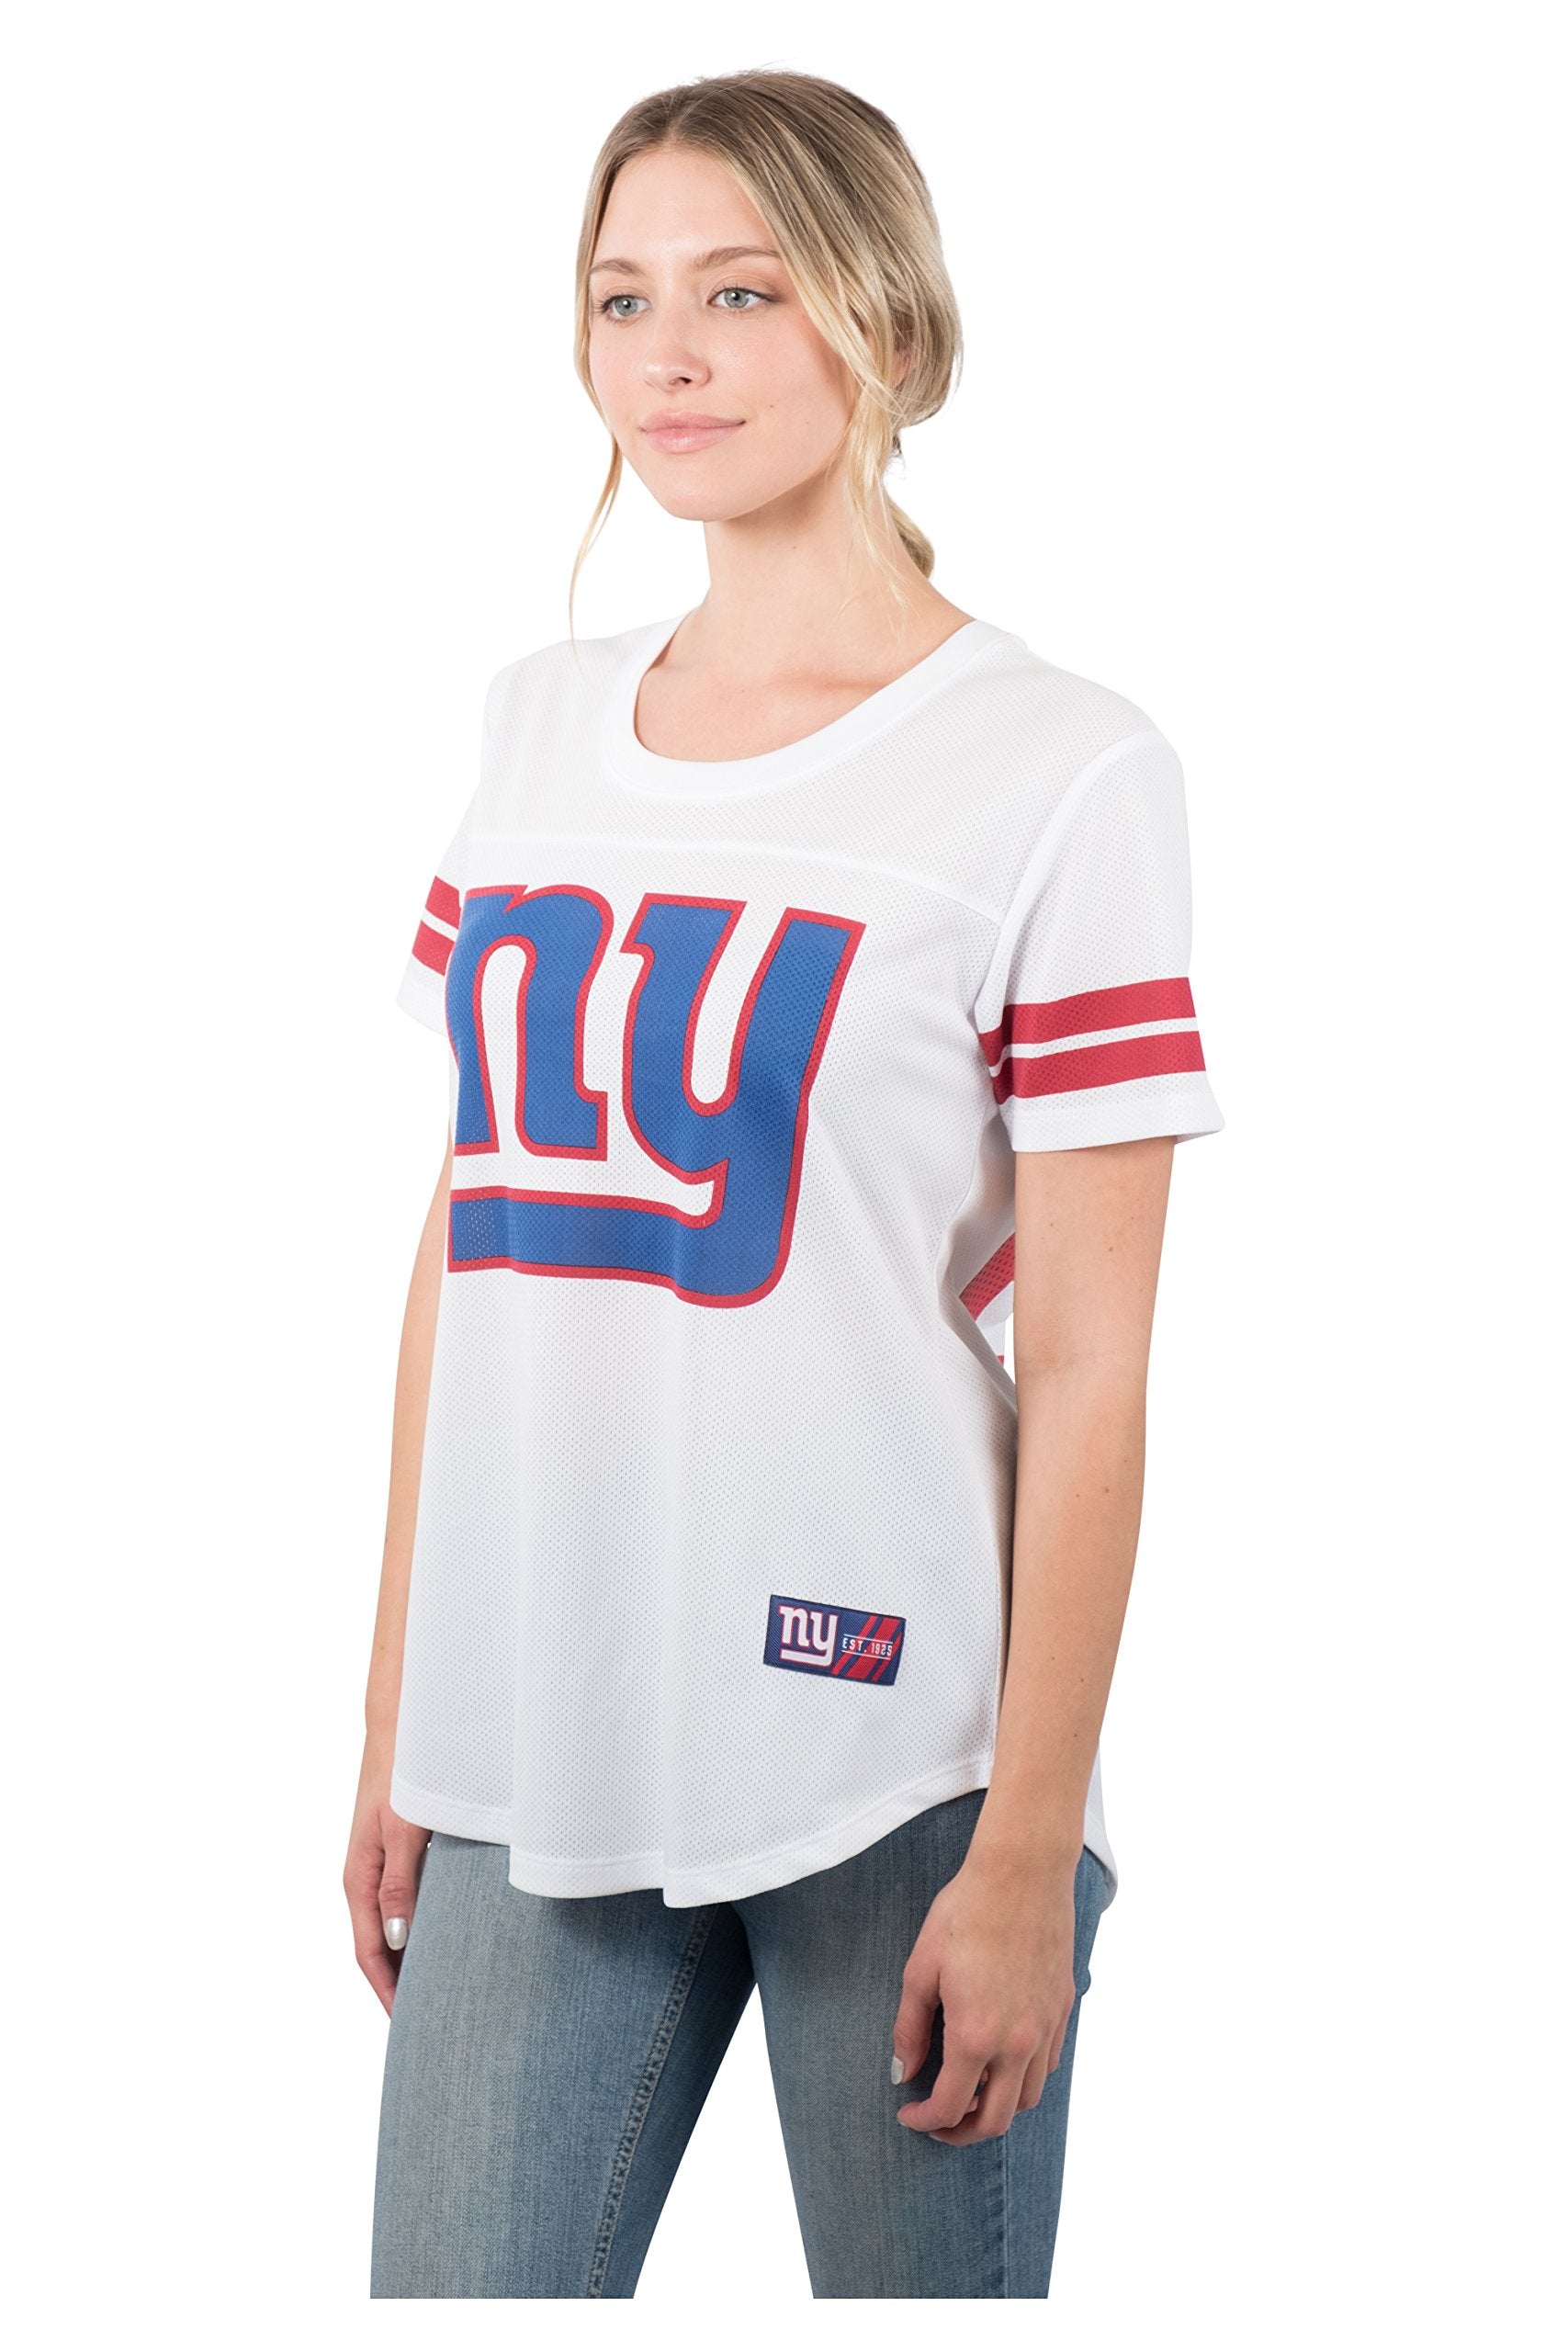 Ultra Game NFL New York Giants Womens Soft Mesh Varsity Stripe T-Shirt|New York Giants